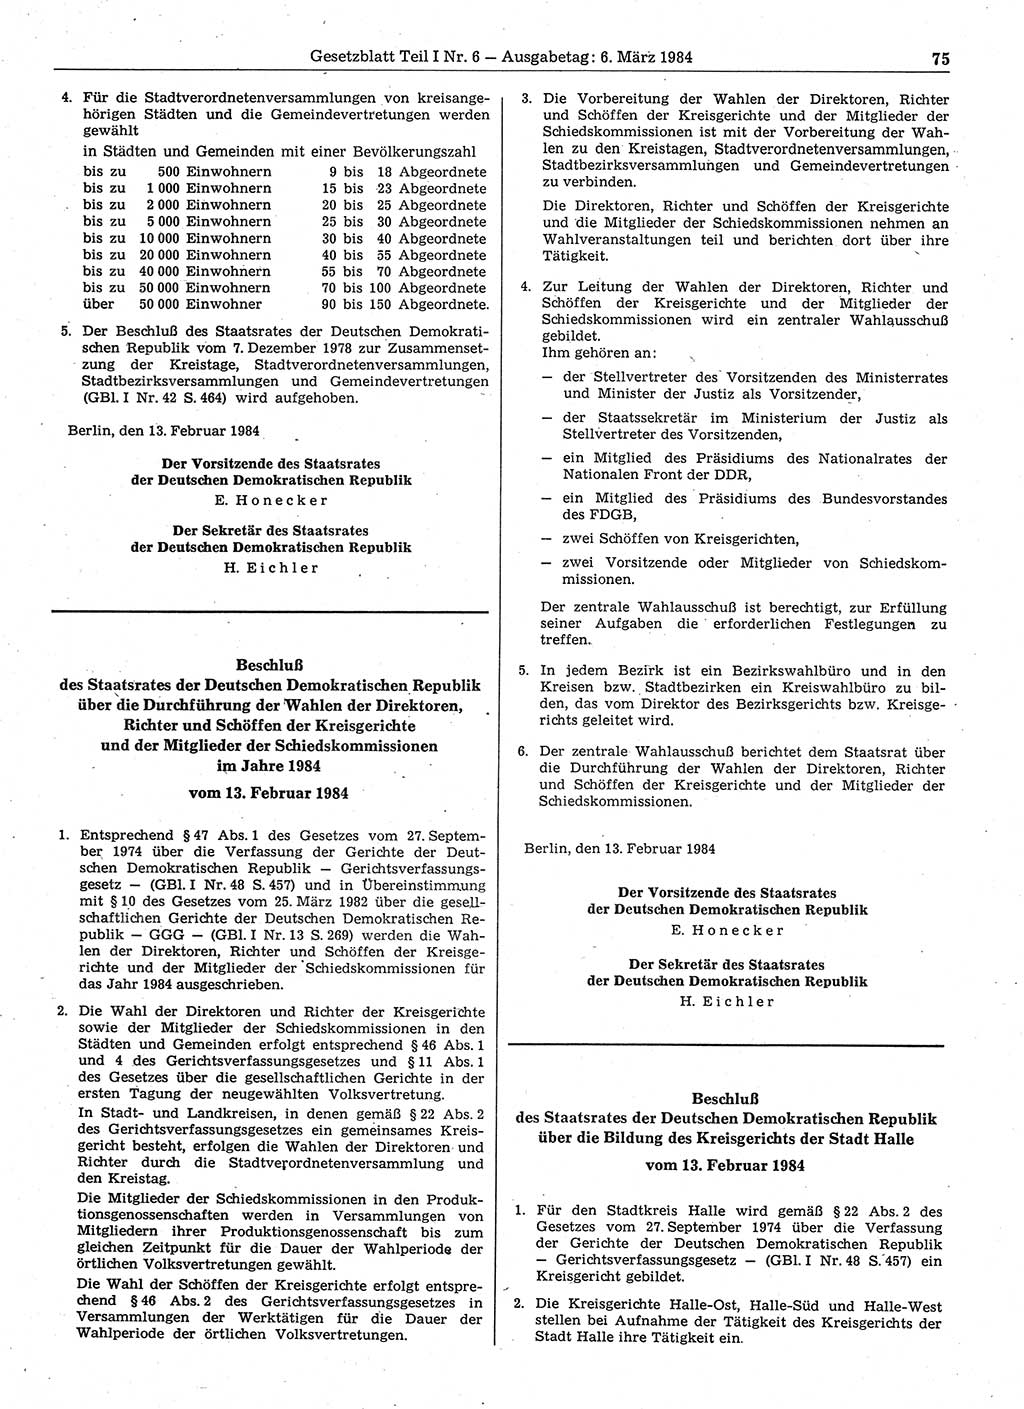 Gesetzblatt (GBl.) der Deutschen Demokratischen Republik (DDR) Teil Ⅰ 1984, Seite 75 (GBl. DDR Ⅰ 1984, S. 75)